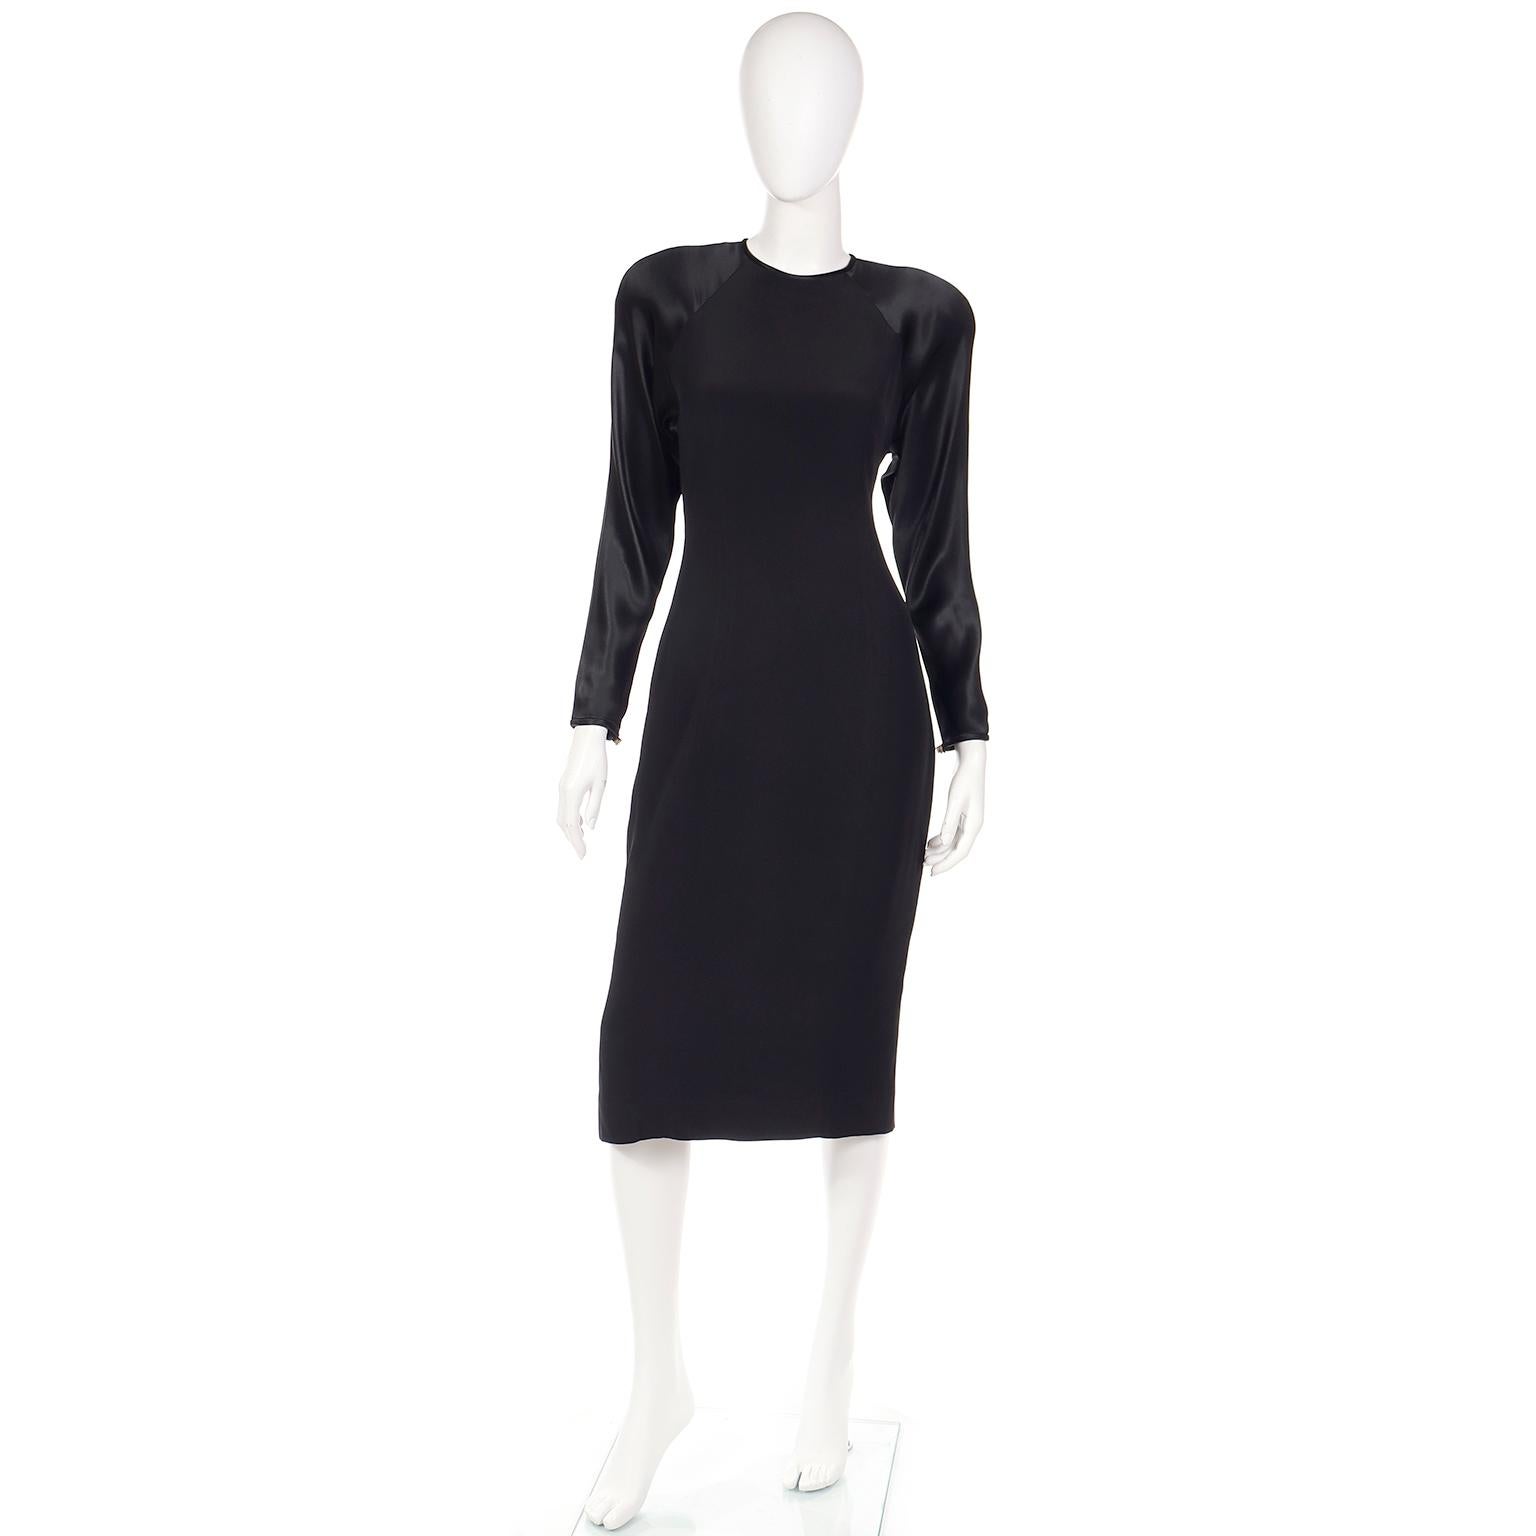 Dies ist ein lustiges schwarzes Kleid von Albert Nipon aus den 1980er Jahren mit einem Flair der 1940er Jahre. Es hat ein mattes Finish mit satinierten Raglanärmeln und Rücken. Die Rückseite lässt sich mit großen Strassknöpfen und zwei Druckknöpfen